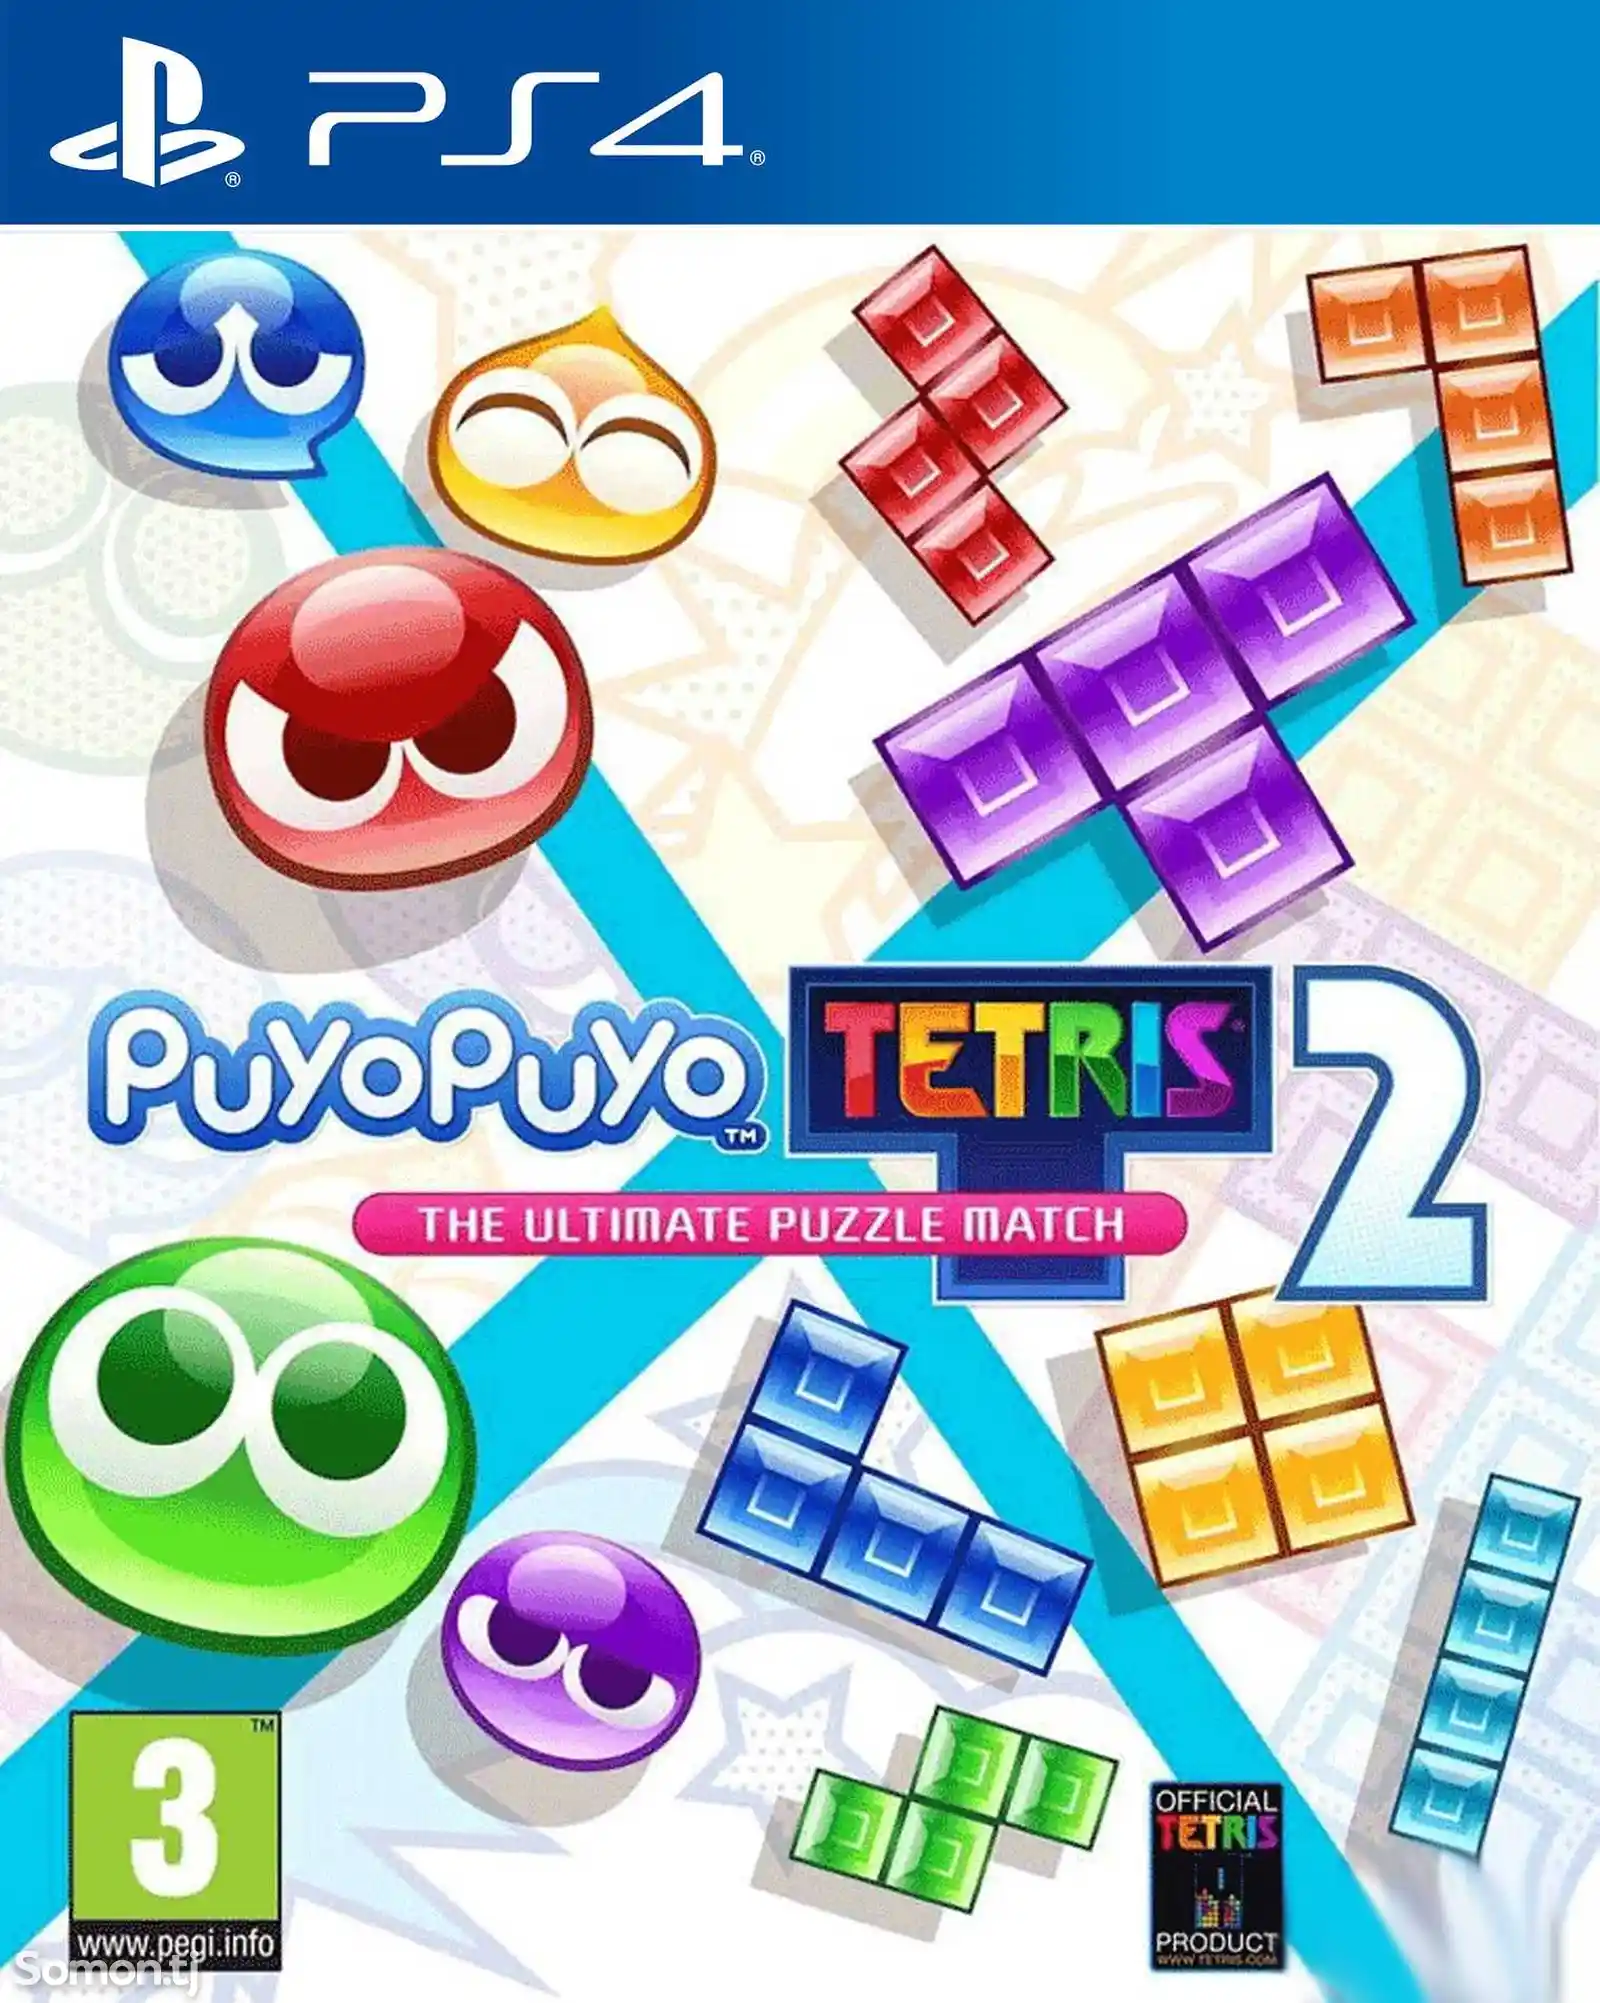 Игра Puyo puyo tetris 2 для PS-4 / 5.05 / 6.72 / 7.02 / 7.55 / 9.00 /-1